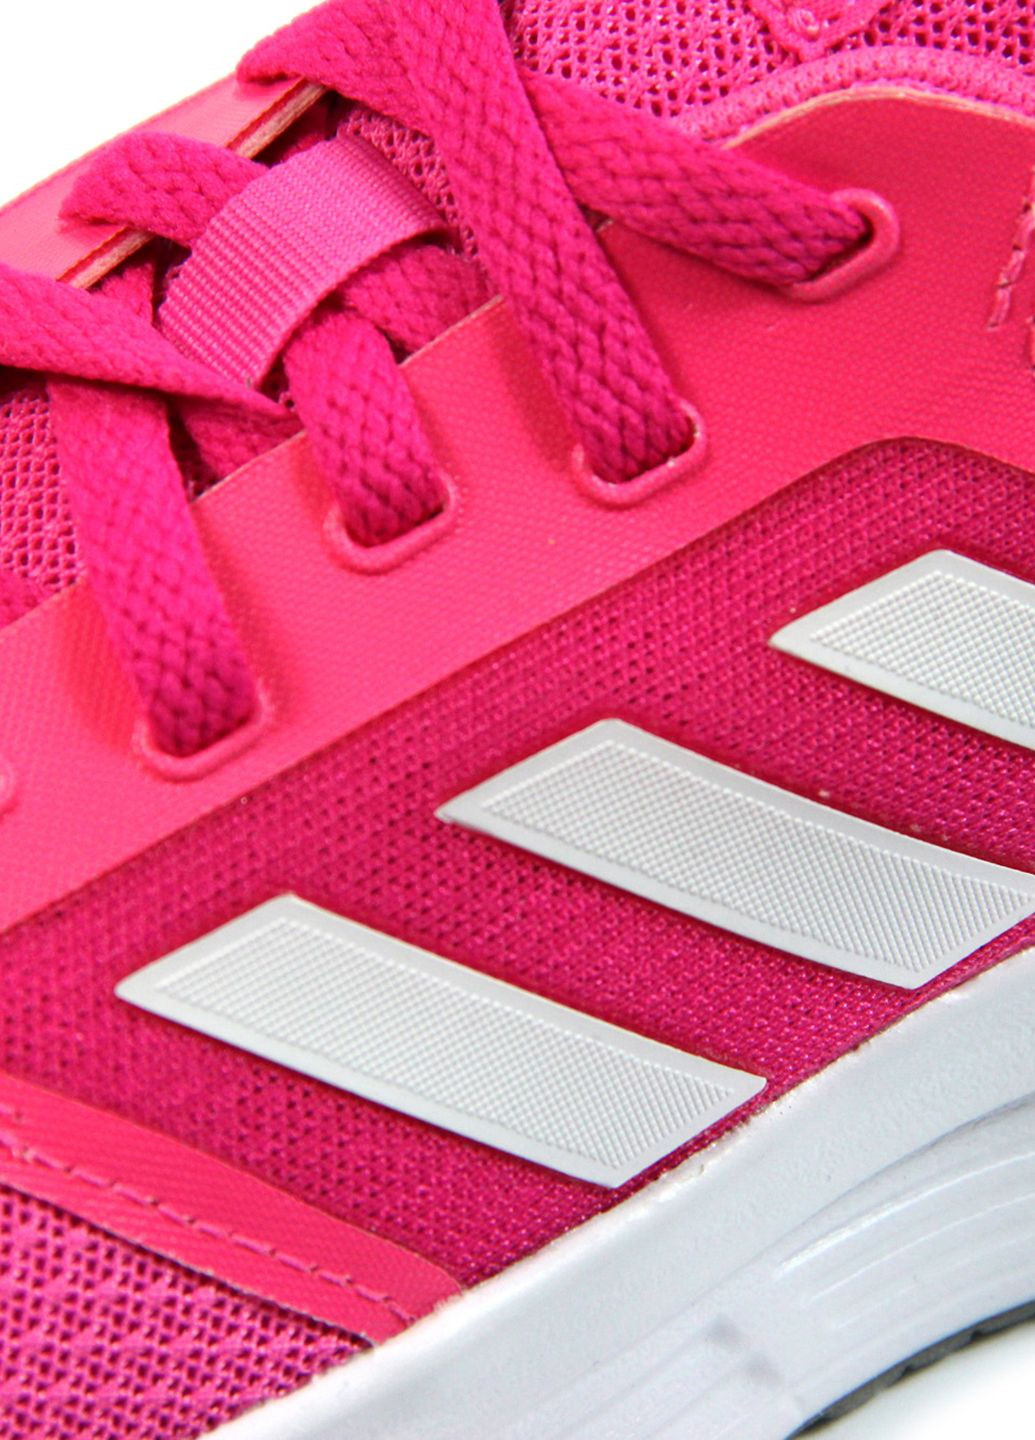 Розовые демисезонные женские кроссовки galaxy 5 h04599 adidas